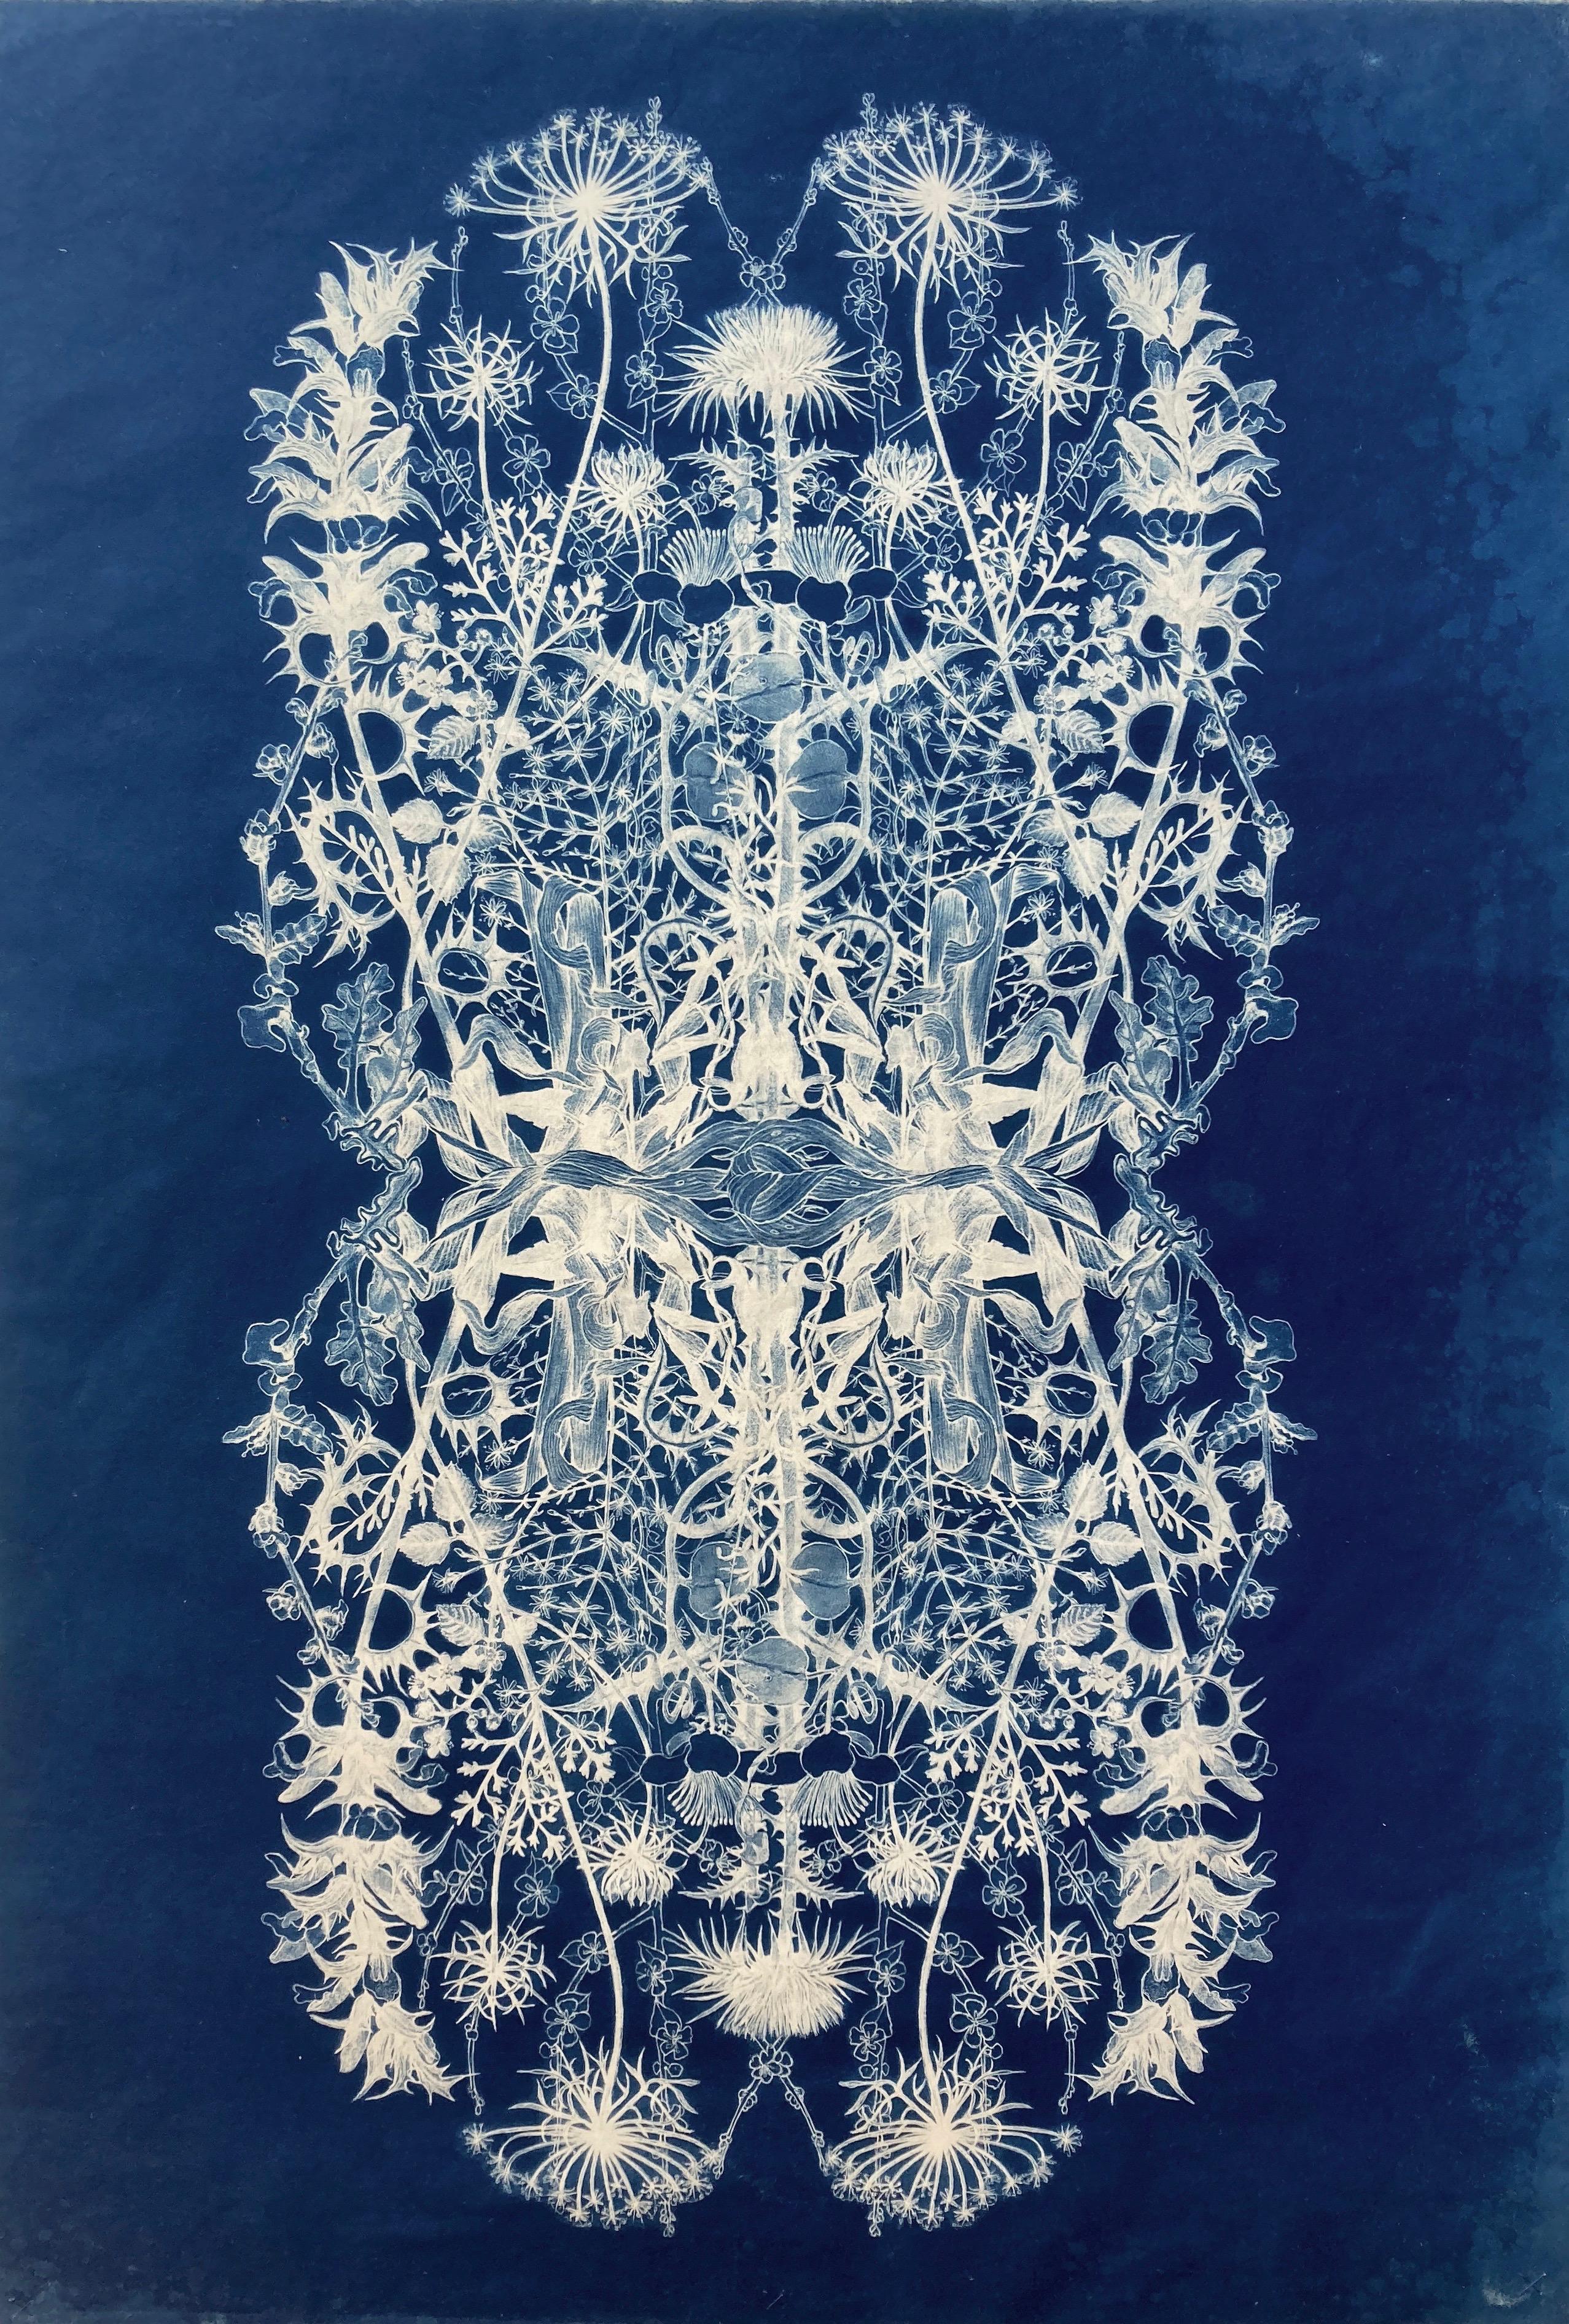 « Botanical Rhapsody II »  Photographie à motif floral réaliste/abstraite bleu/blanc - Print de Judith Allen-Efstathiou